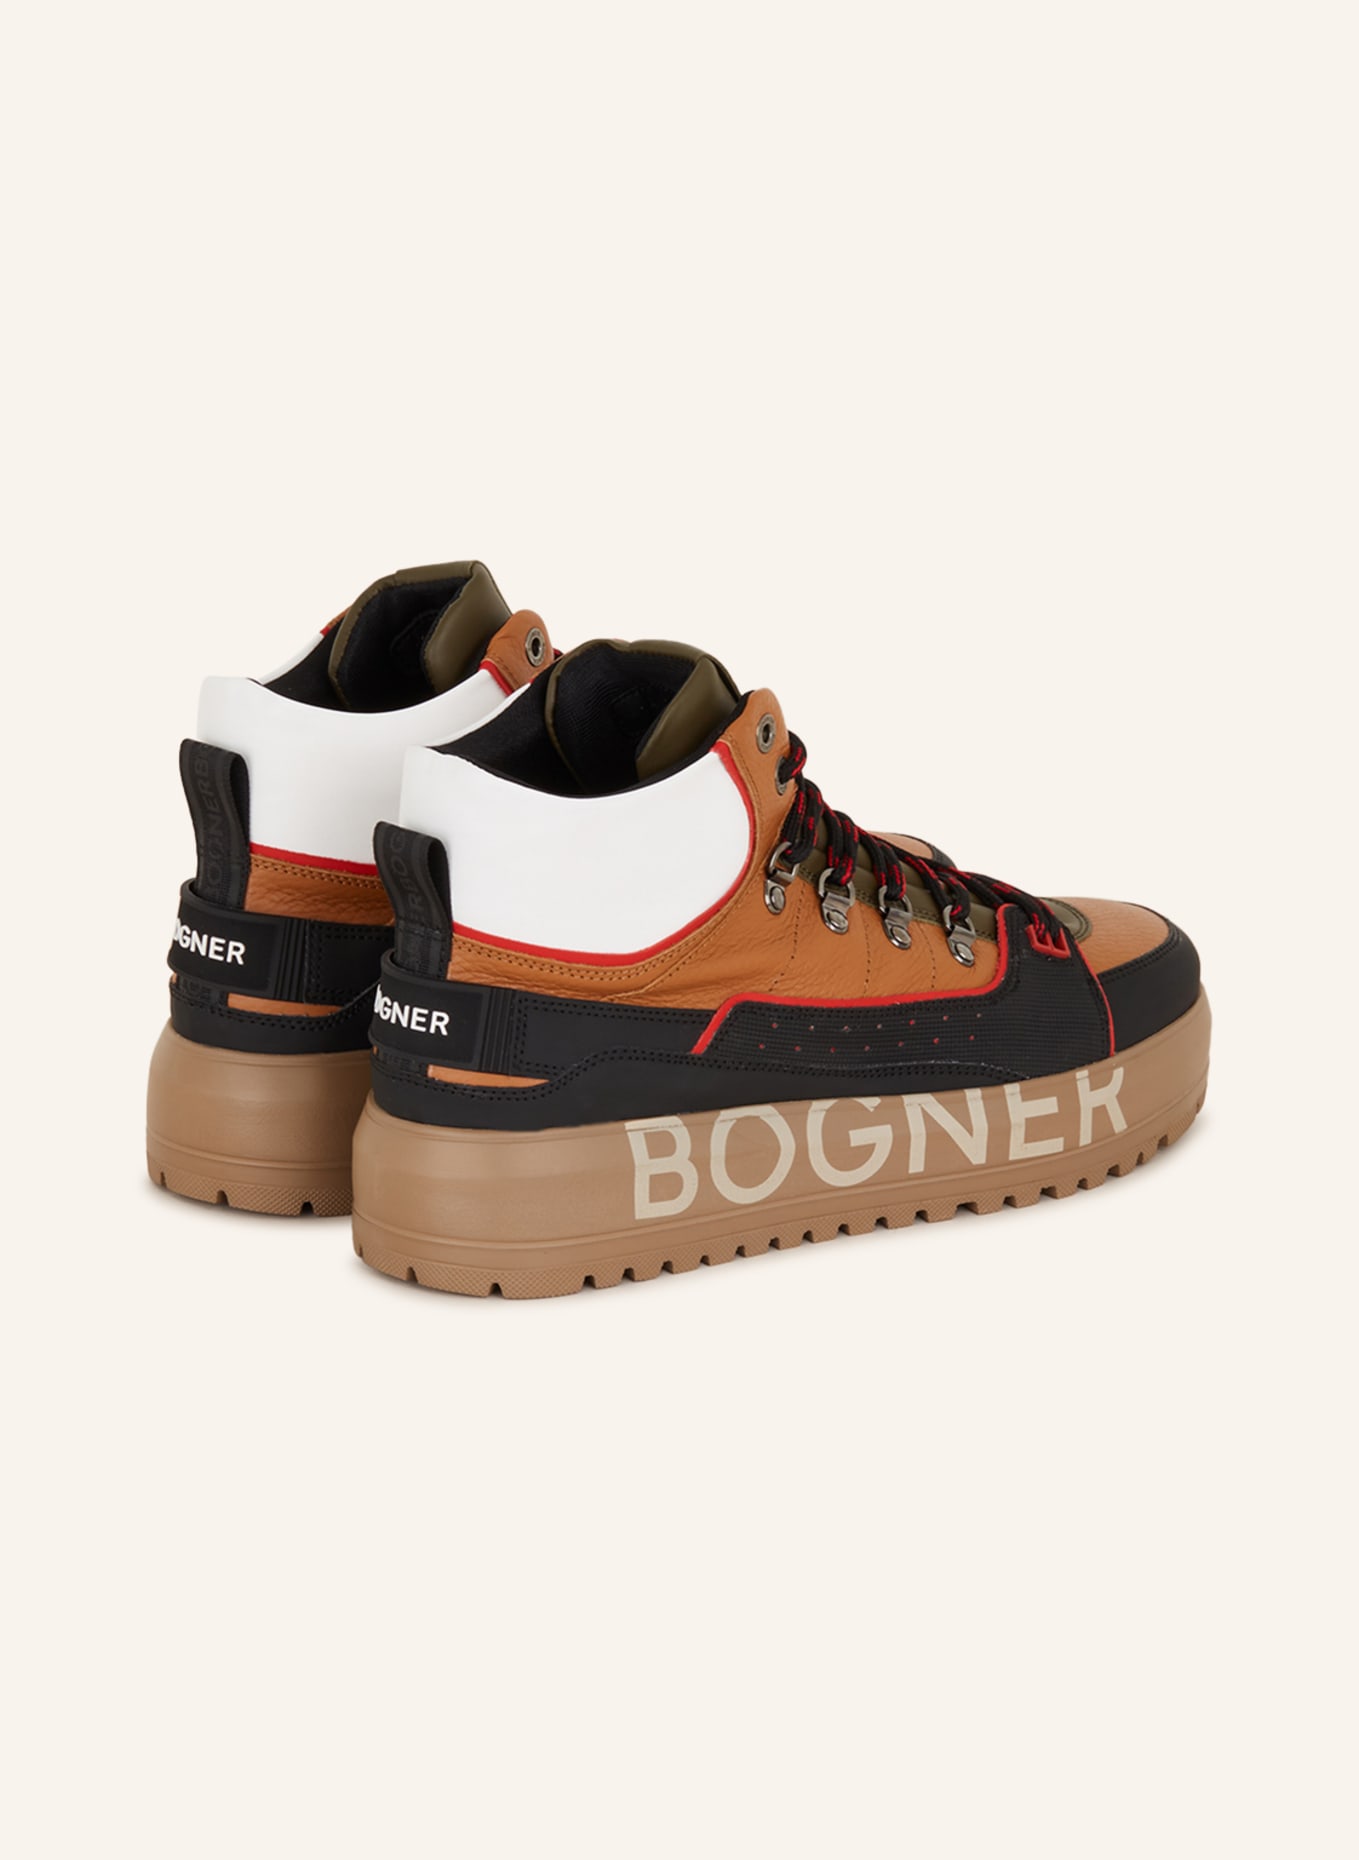 BOGNER Hightop-Sneaker ANTWERP M 7, Farbe: BRAUN/ SCHWARZ/ WEISS (Bild 2)